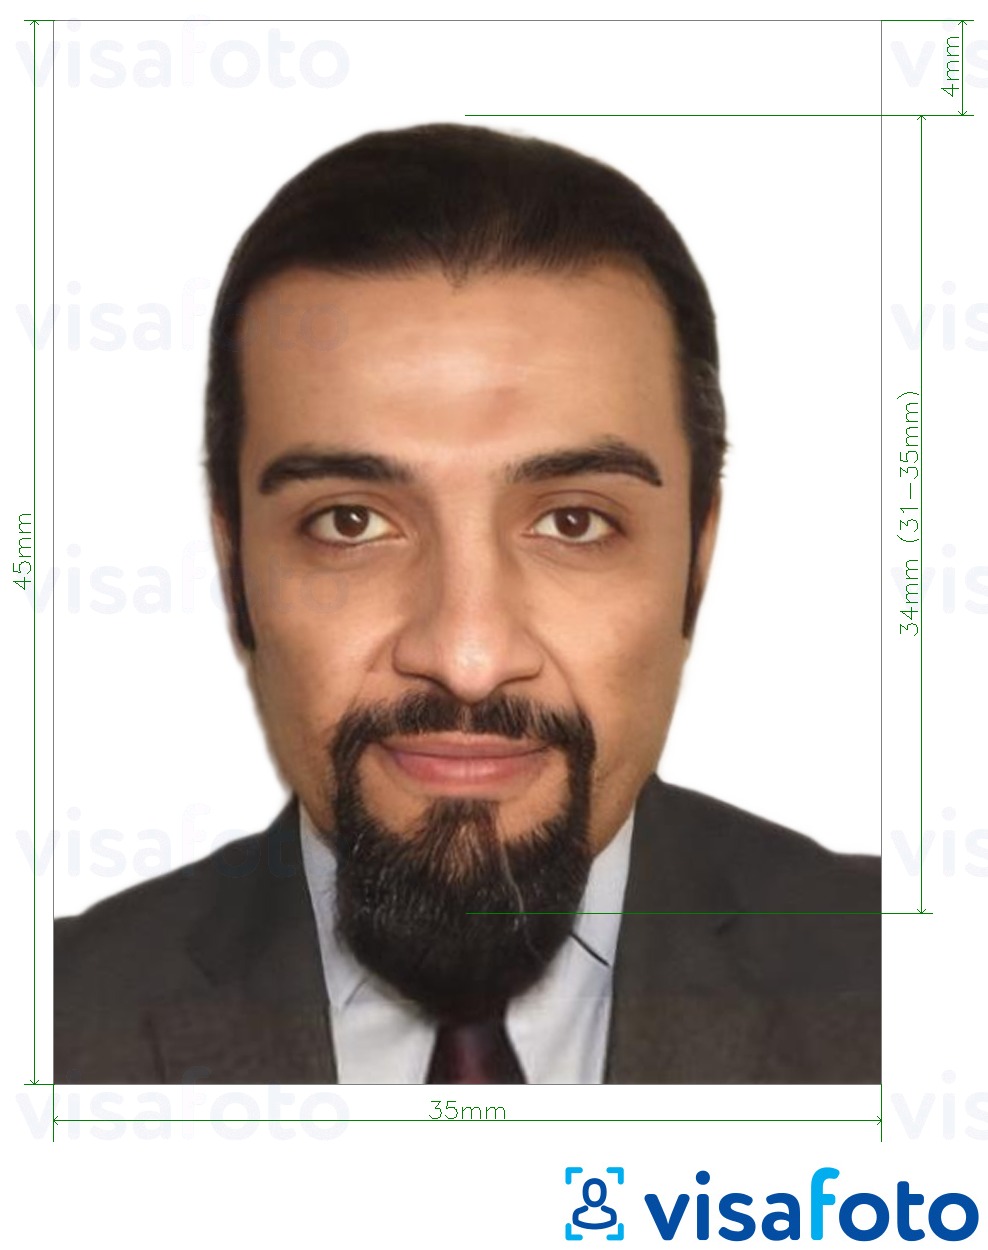 ตัวอย่างภาพถ่ายสำหรับ บัตรประจำตัวประชาชน UAE ออนไลน์ 35x45 มม ด้วยข้อกำหนดเกี่ยวกับขนาดที่แน่นอน